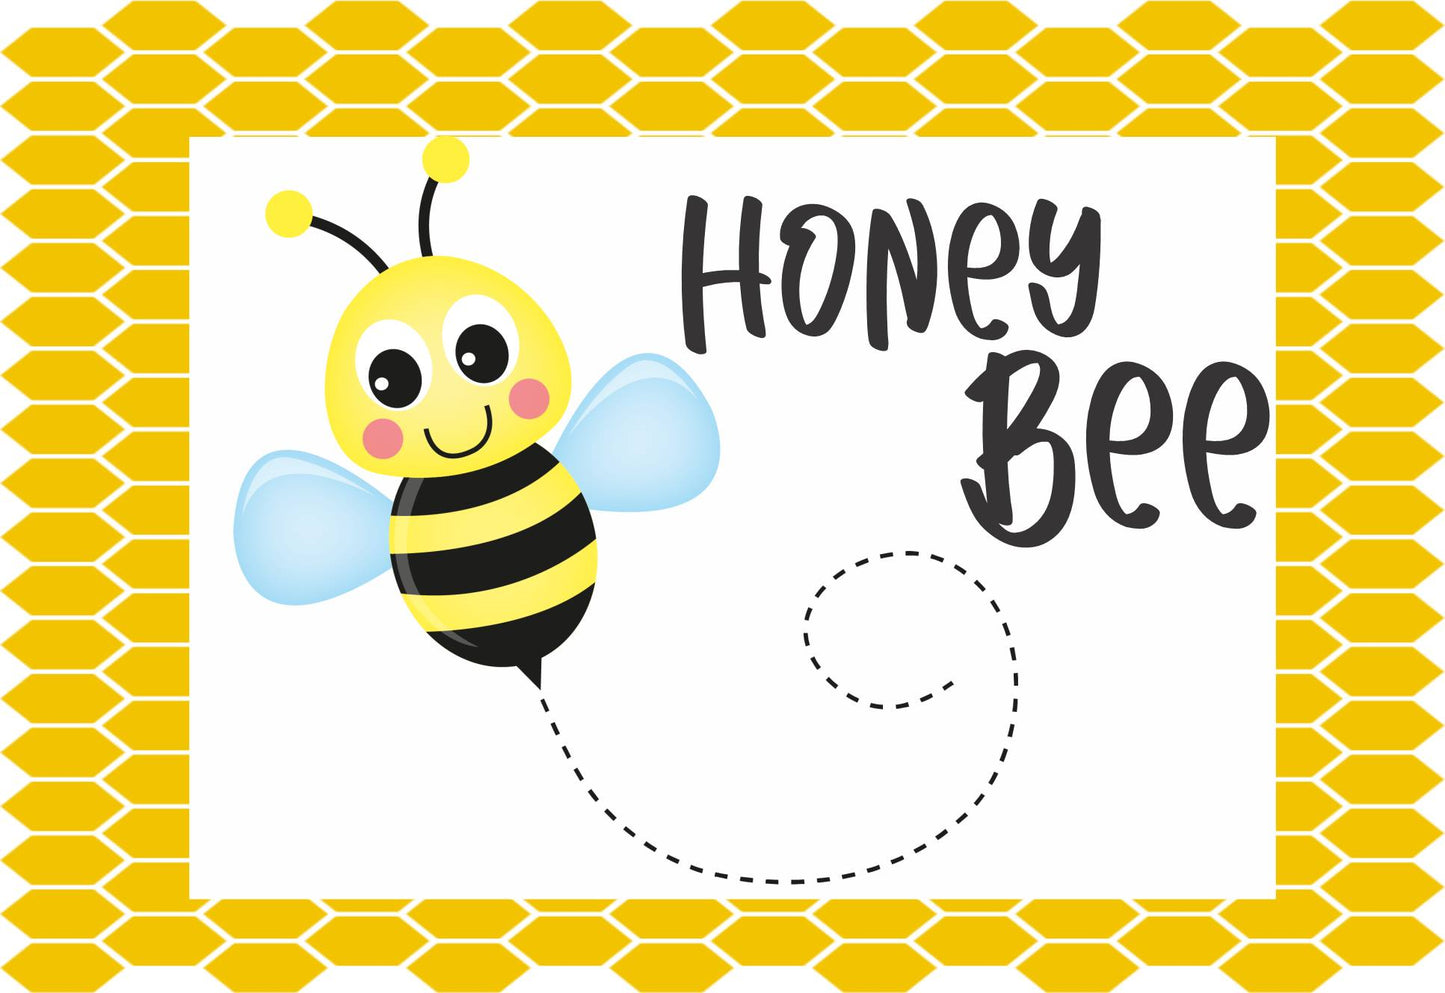 Honey Bee Tier Tray Sign 4 x 6